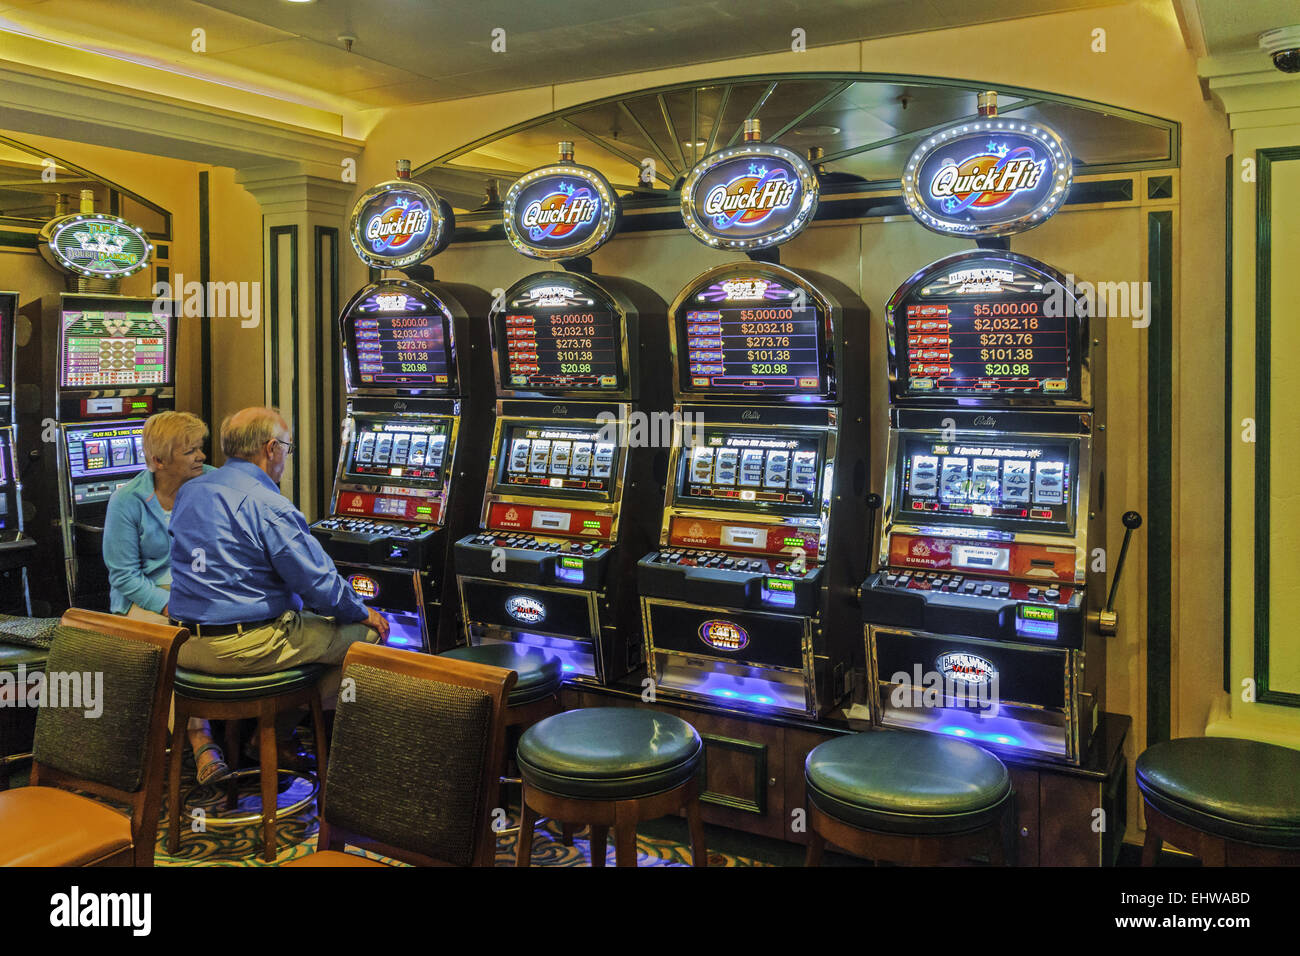 Ship Queen Elizabeth Gambling Casino Stock Photo